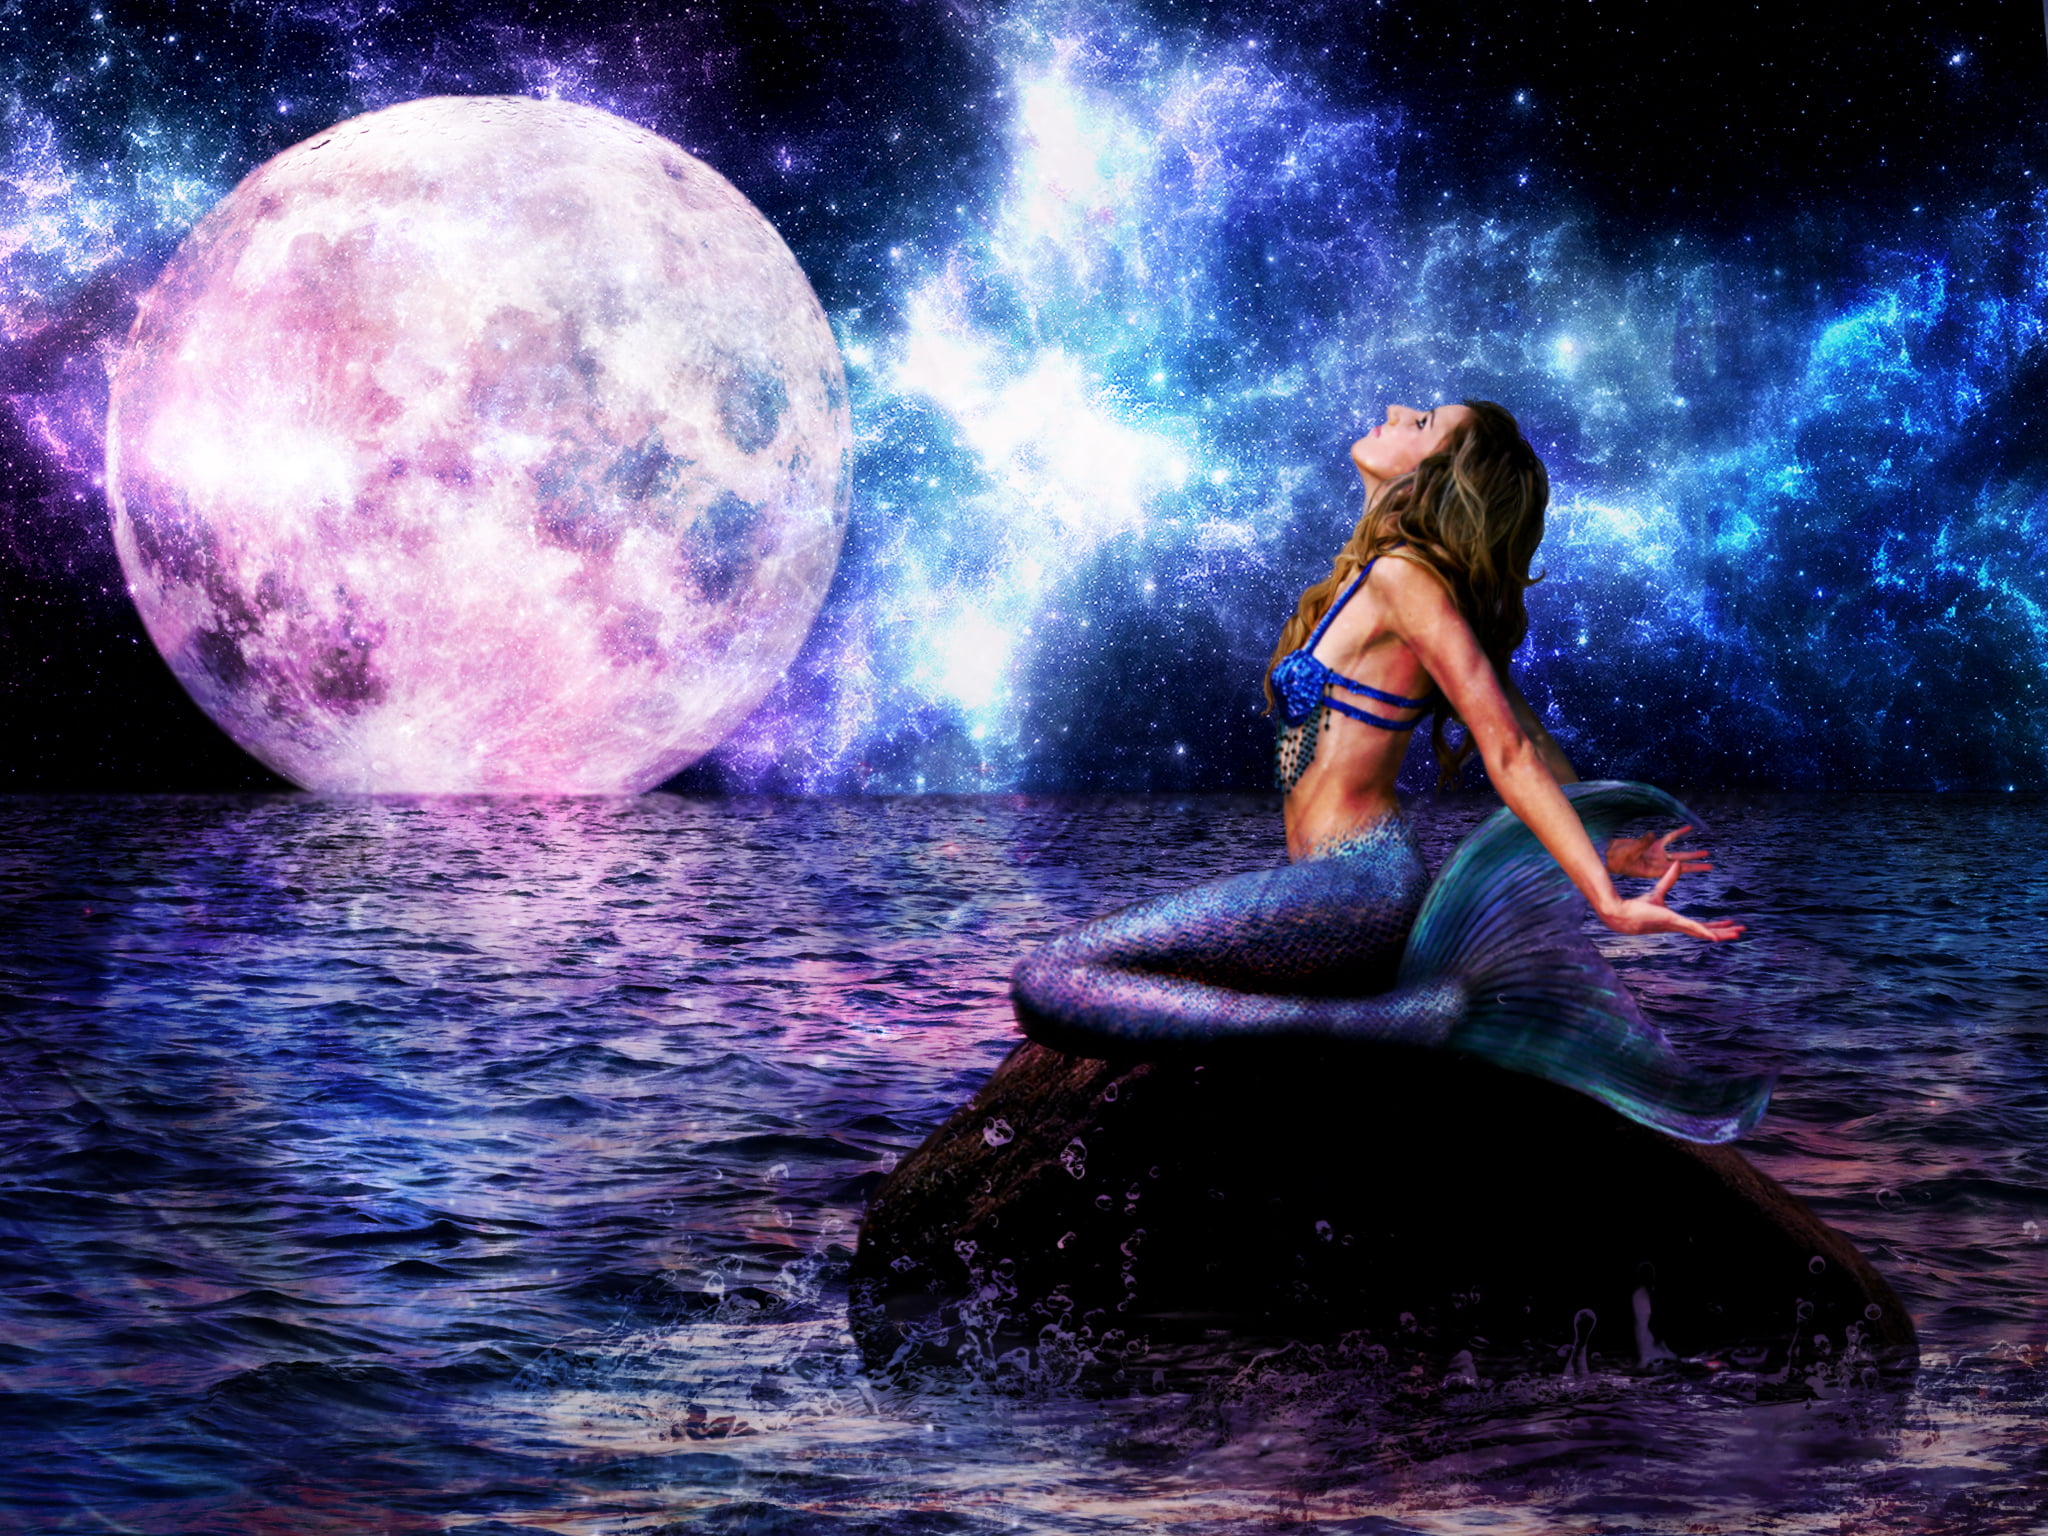 mermaid on stone under moon digital wallpaper, sea, wave, look